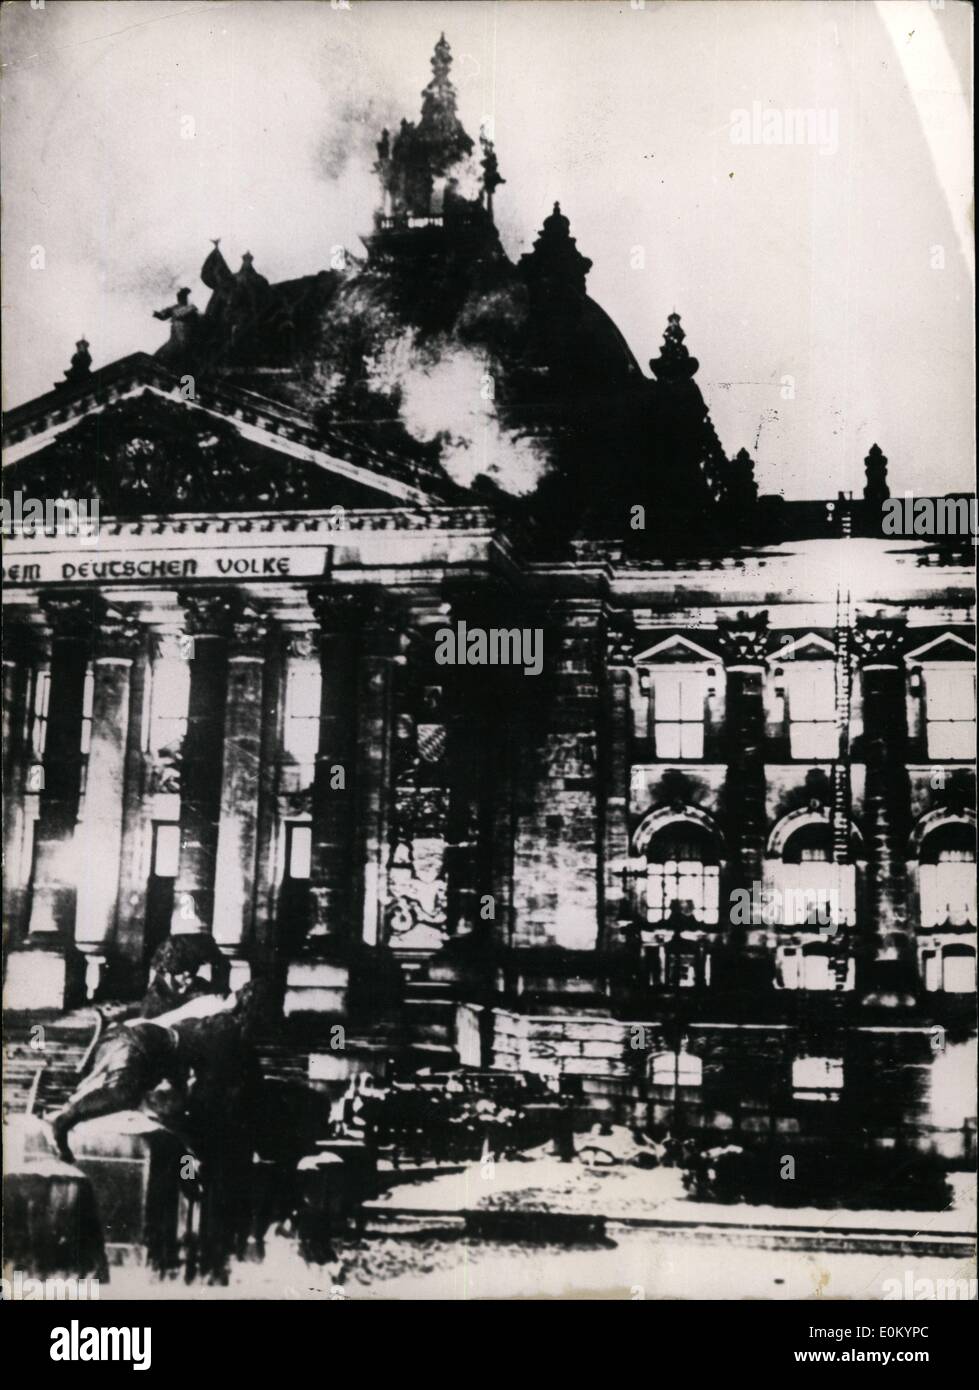 02 février 1953 - Reichstagtag Burning!: Lorsque cette nouvelle est passée par le monde le 27 février 1933, beaucoup d'entre nous l'ont pris comme un présage que les nouveaux dirigeants de l'Allemagne a envoyé la démocratie parlementaire en jeu. Pour Hitler et ses disciples, le Reichstag allemand en feu (bâtiment de l'ancienne Assemblée nationale allemande) était la ''lumière brûlante d'un nouveau discours dans l'histoire du monde'' un spectacle qui a été mis en scène pour annoncer le début du troisième Reich. Pour l'Allemagne démocratique, cependant, c'était un début de tyrannie et de désastre pris o Banque D'Images